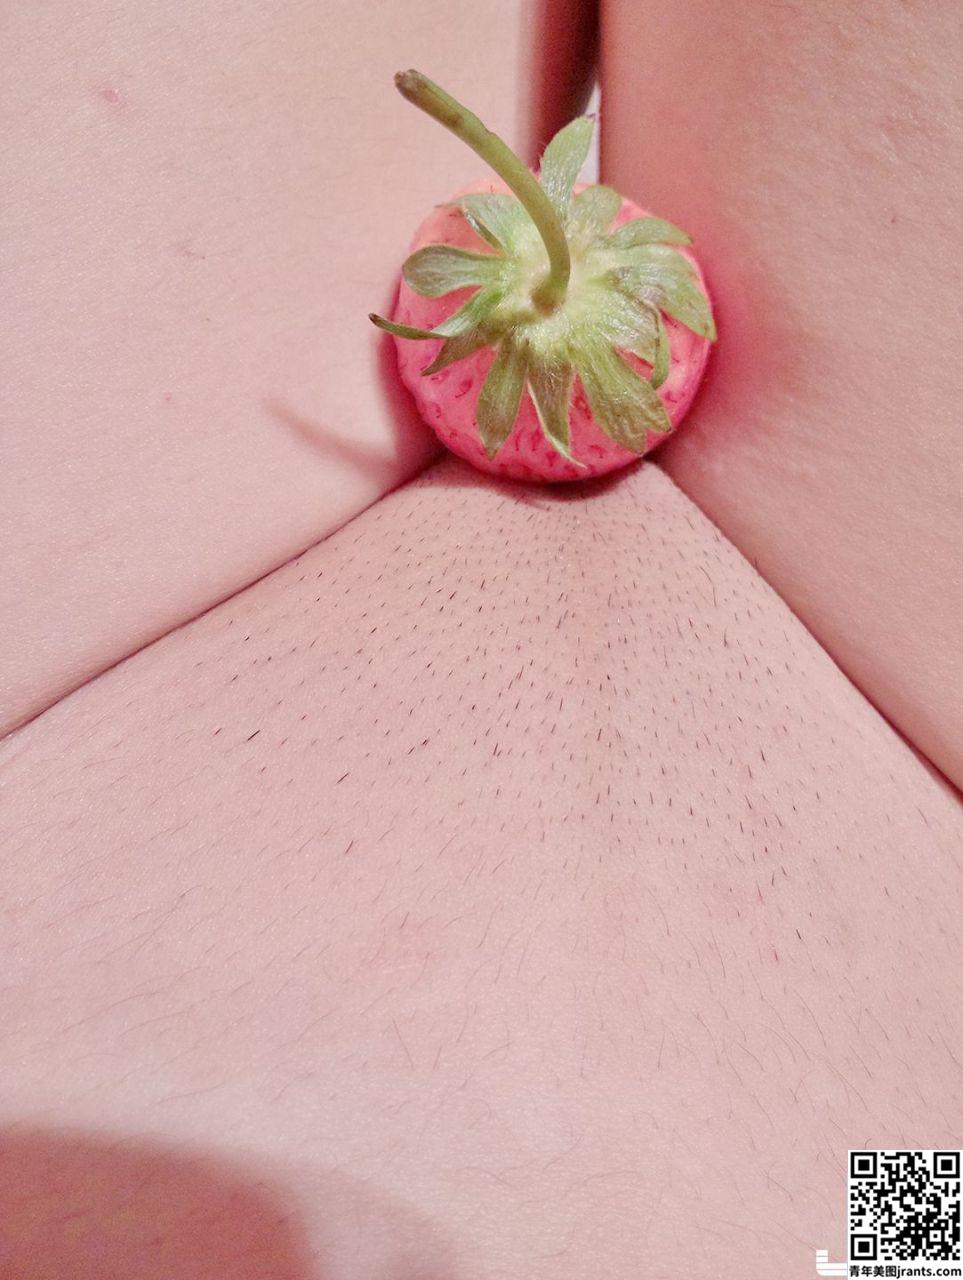 软萌萝莉小仙 下面吃草莓 &#8211; Strawberry in pussy (25P)